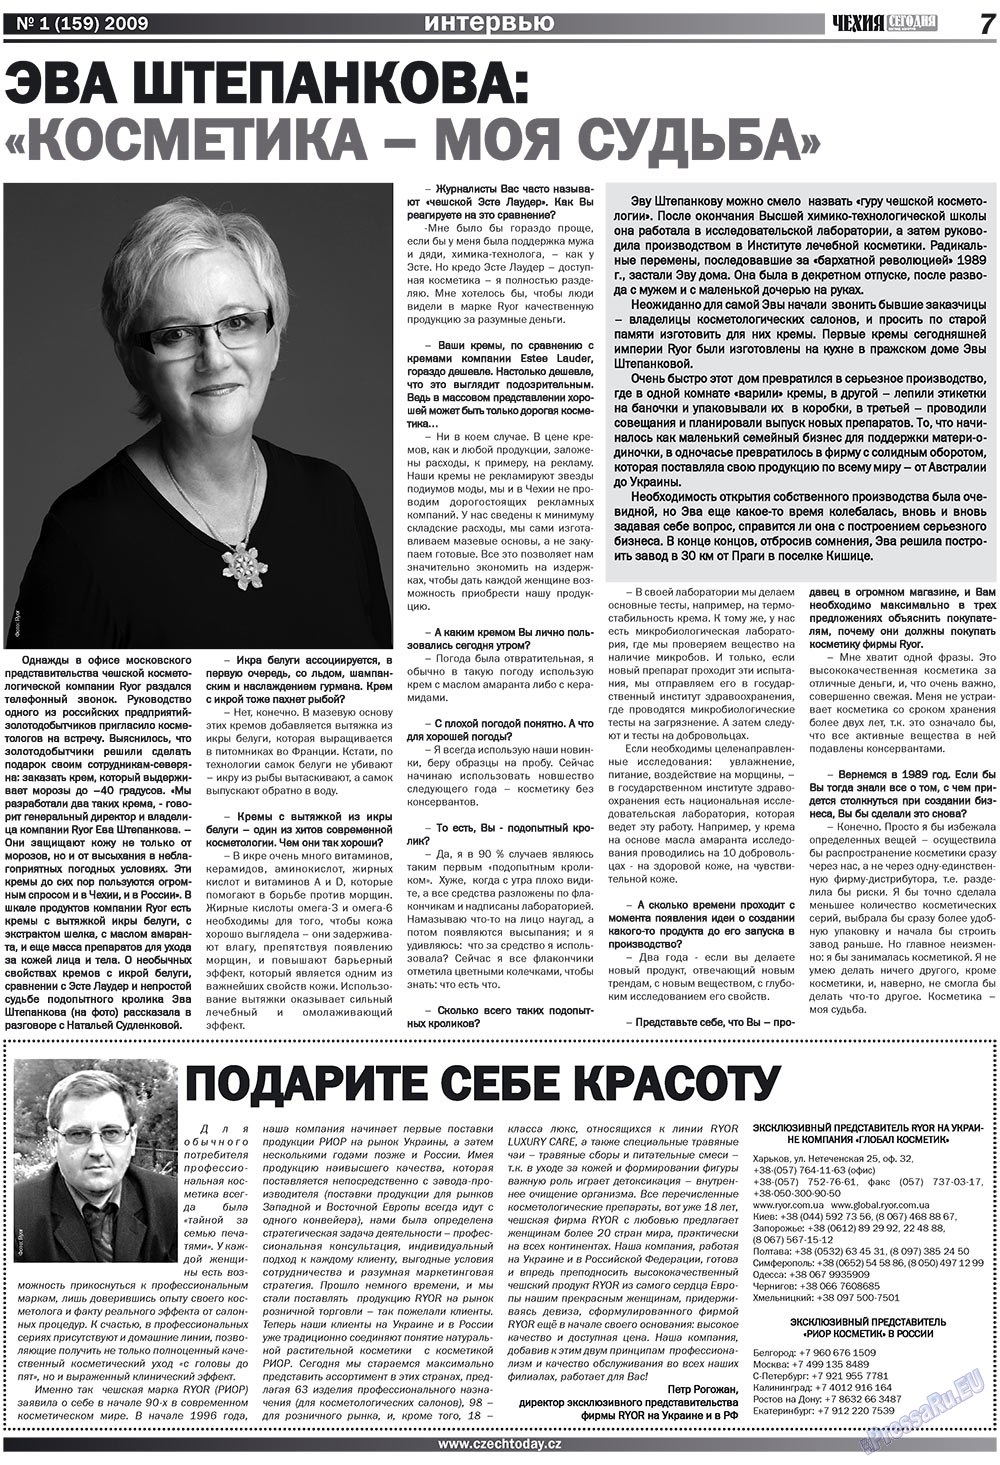 Чехия сегодня, журнал. 2009 №1 стр.7